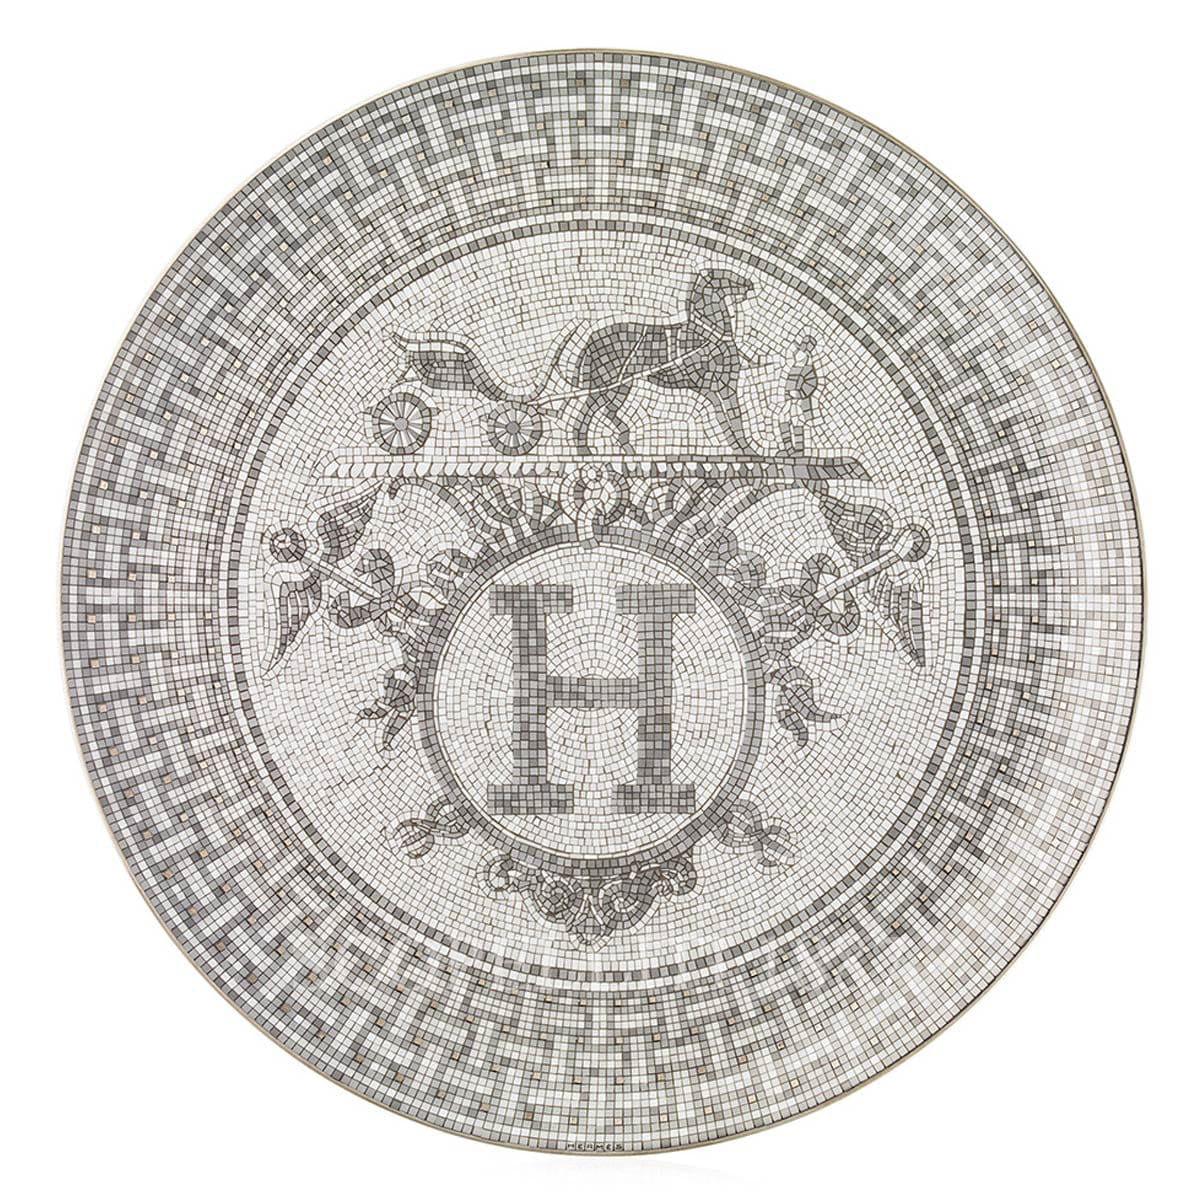 Hermes Mosaique au 24 Platinum Small Box